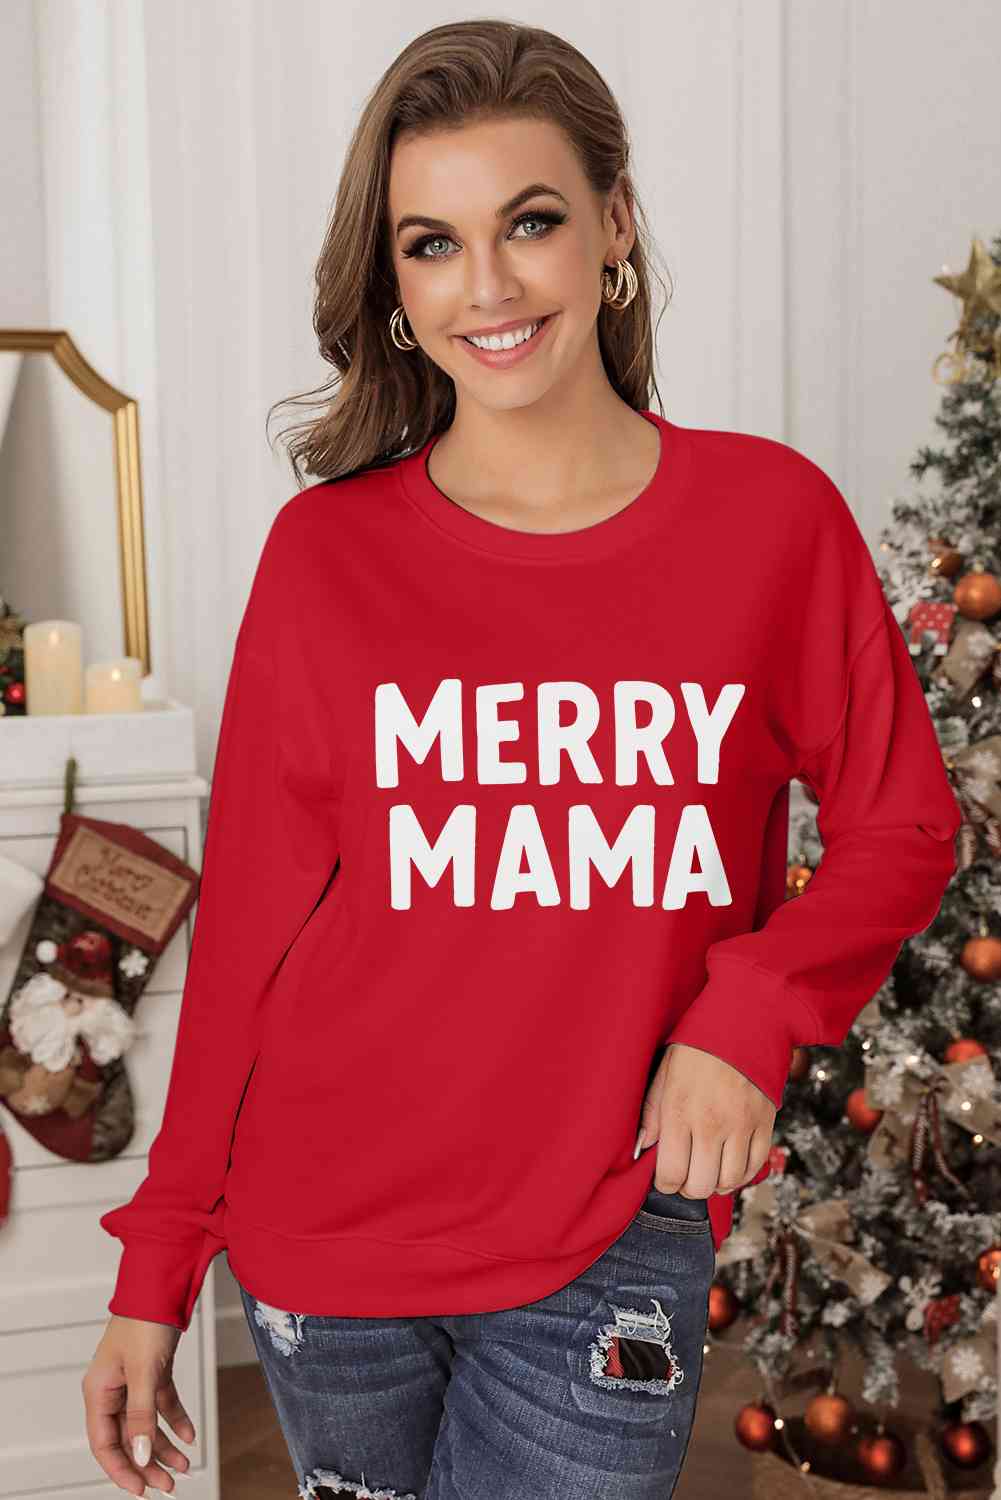 MERRY MAMA Red Graphic Round Neck Sweatshirt